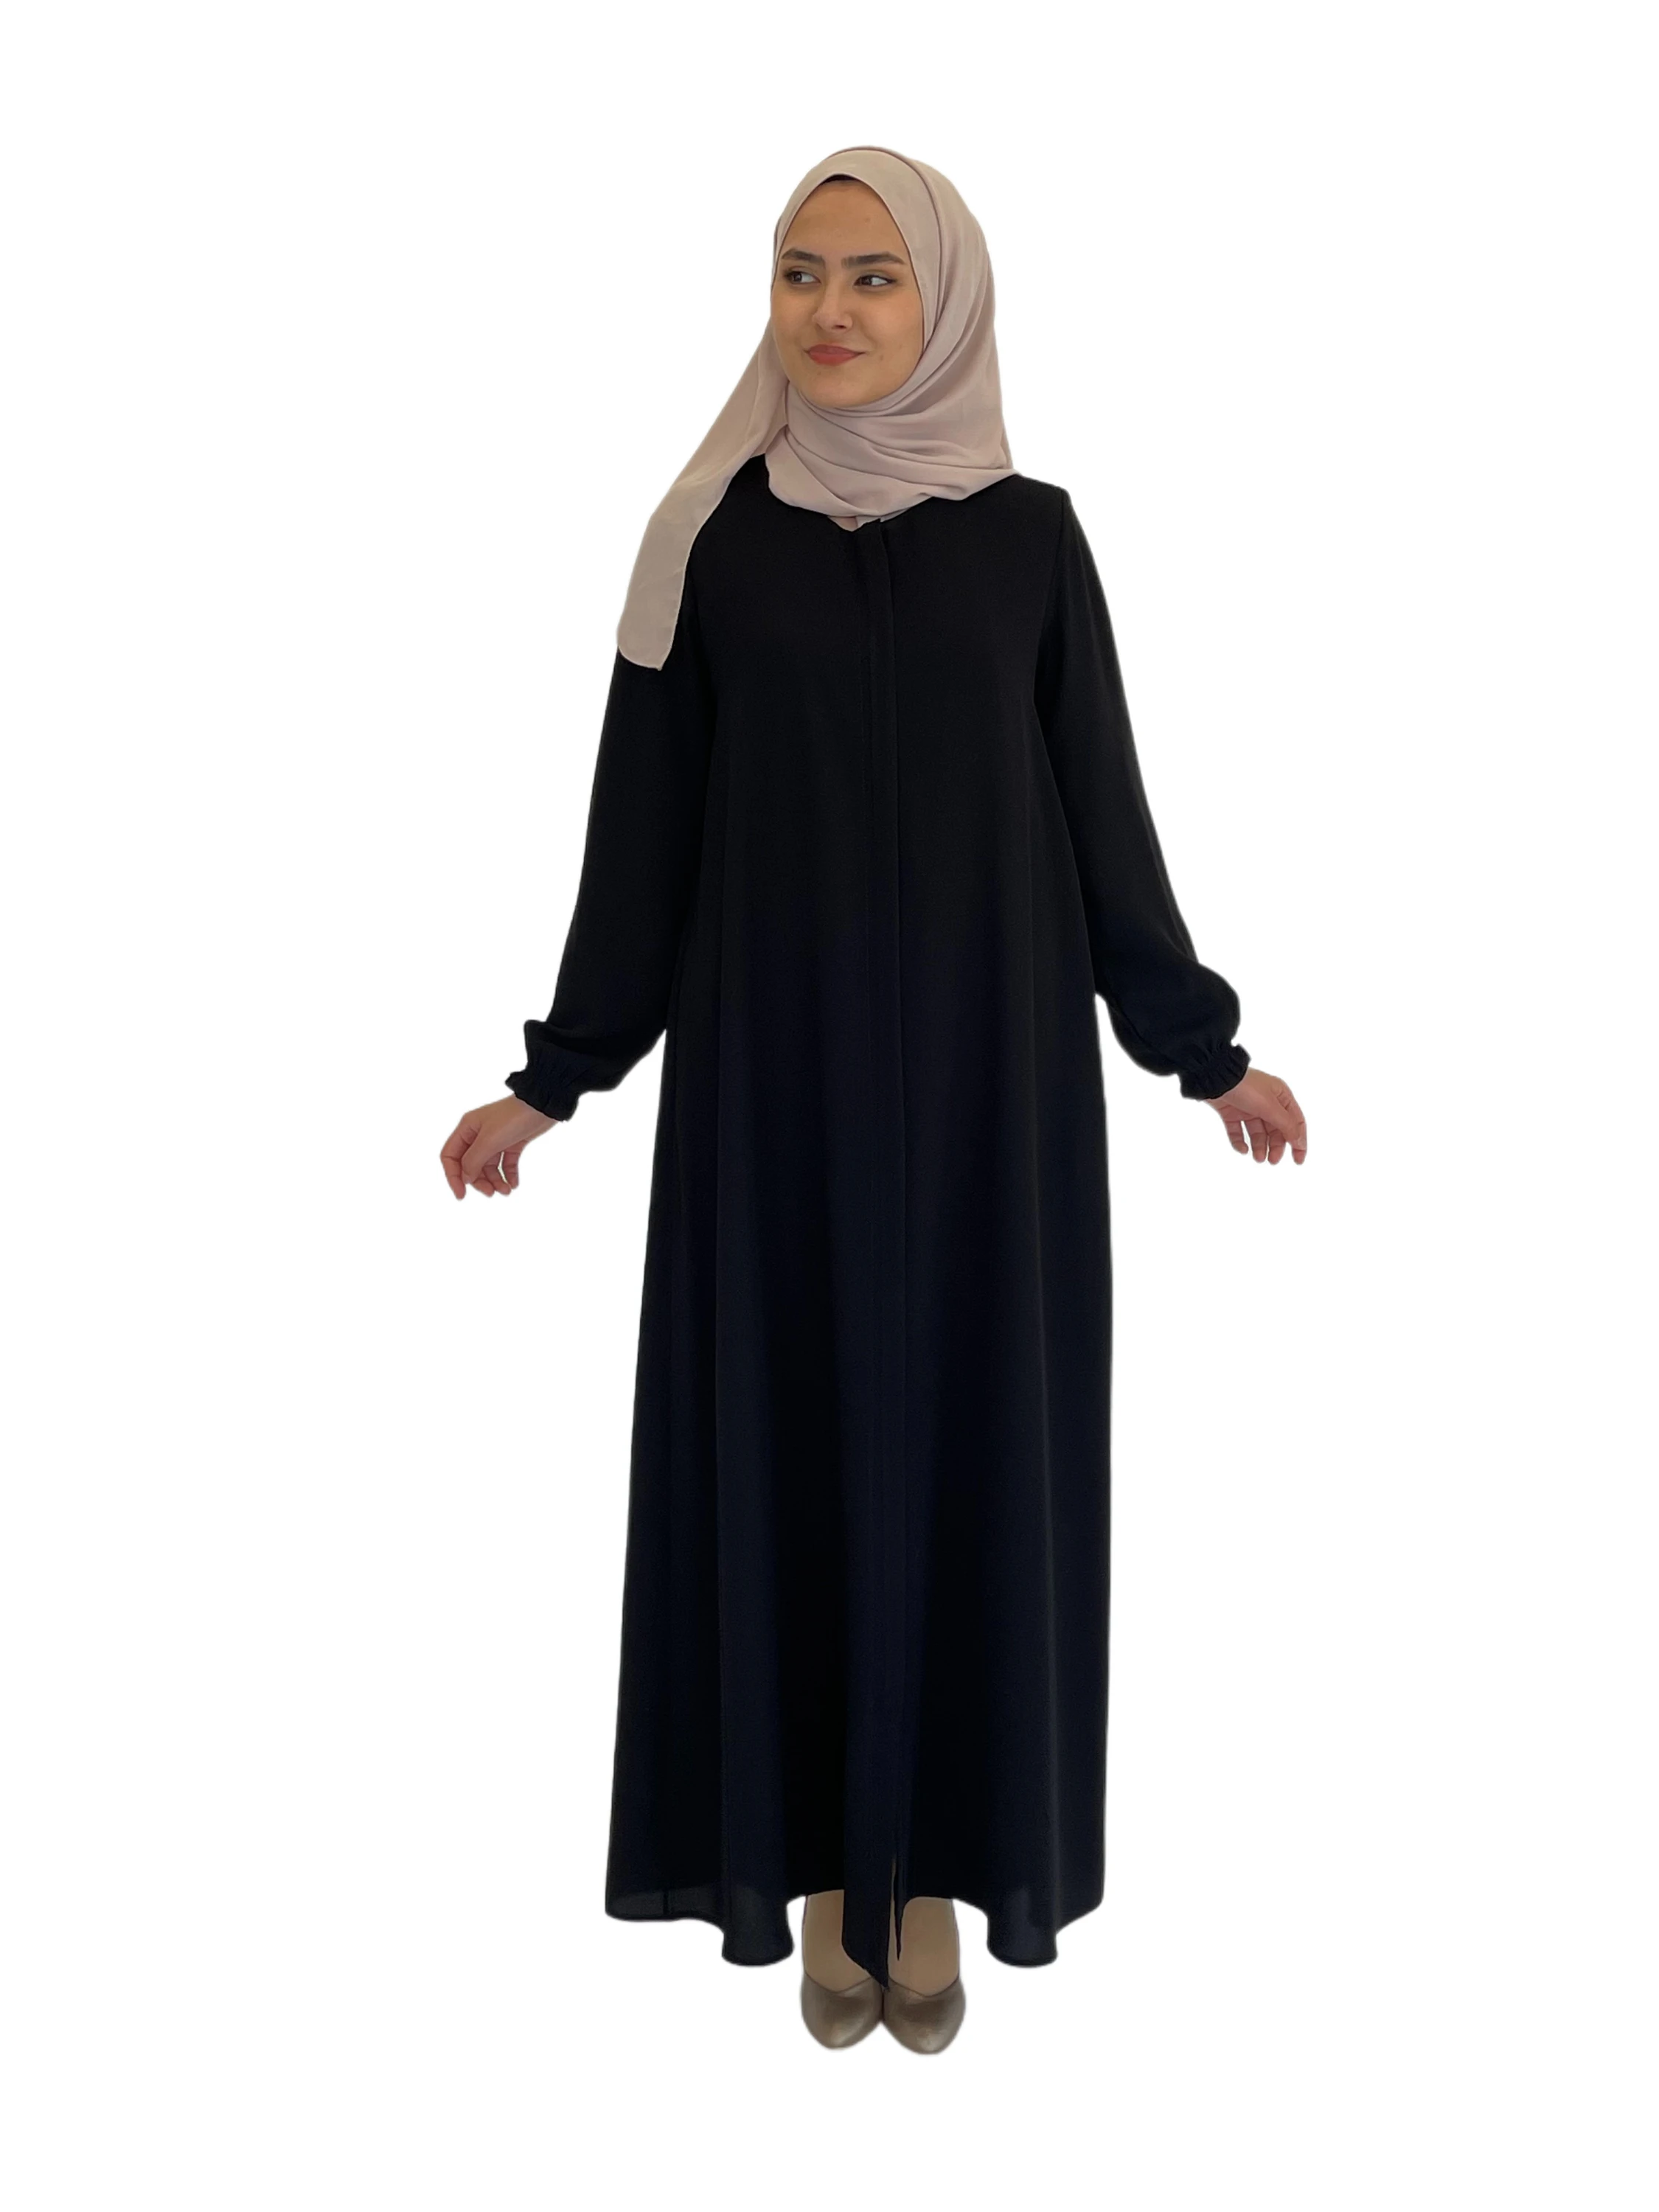 Макси-платье с длинным рукавом, абайя для мусульманских платьев для женщин, повседневная одежда из крепированной ткани, хиджаб для Дубая, по...